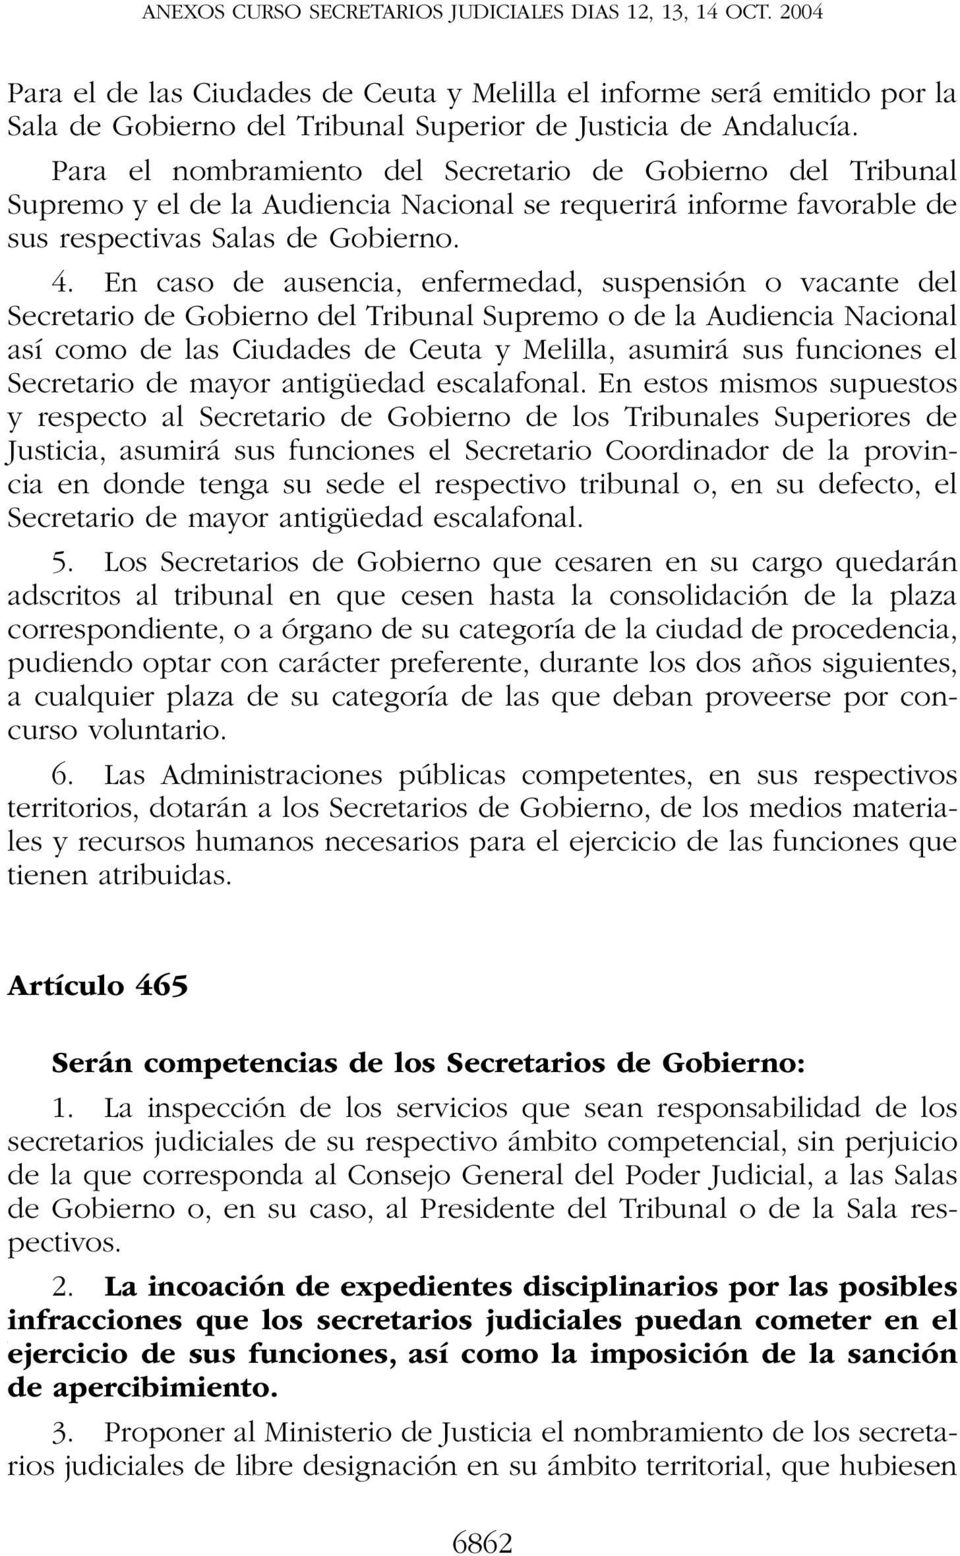 En caso de ausencia, enfermedad, suspensión o vacante del Secretario de Gobierno del Tribunal Supremo o de la Audiencia Nacional así como de las Ciudades de Ceuta y Melilla, asumirá sus funciones el